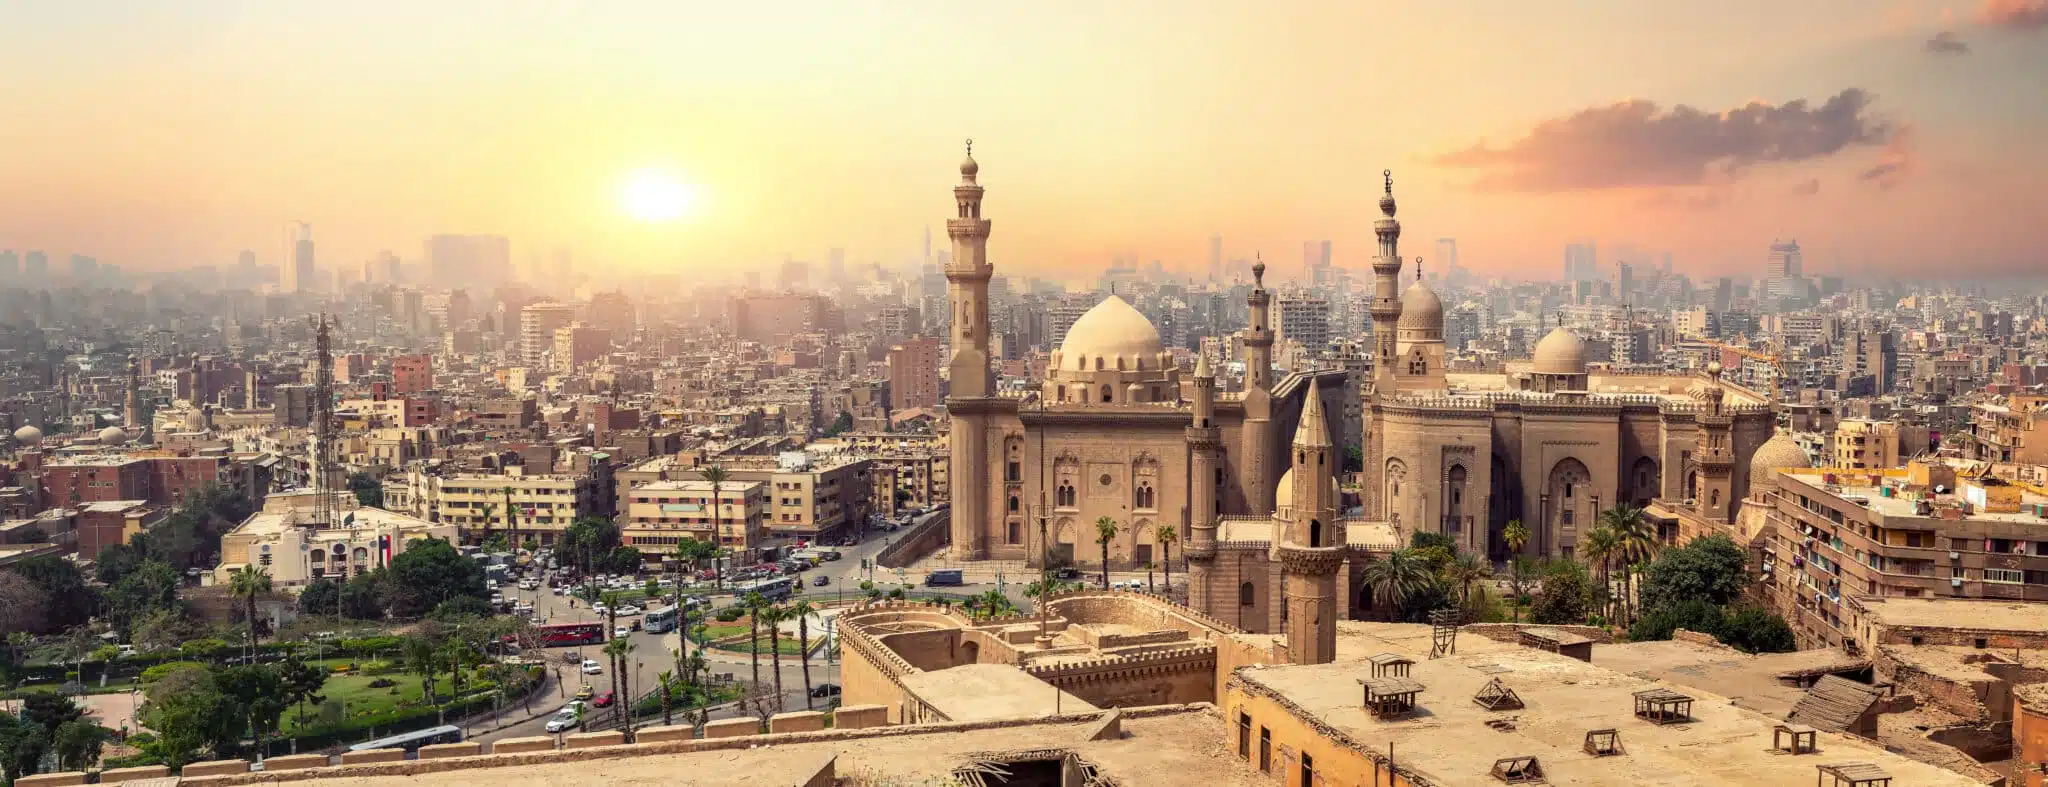 Mosquée du sultan Hassan au Caire